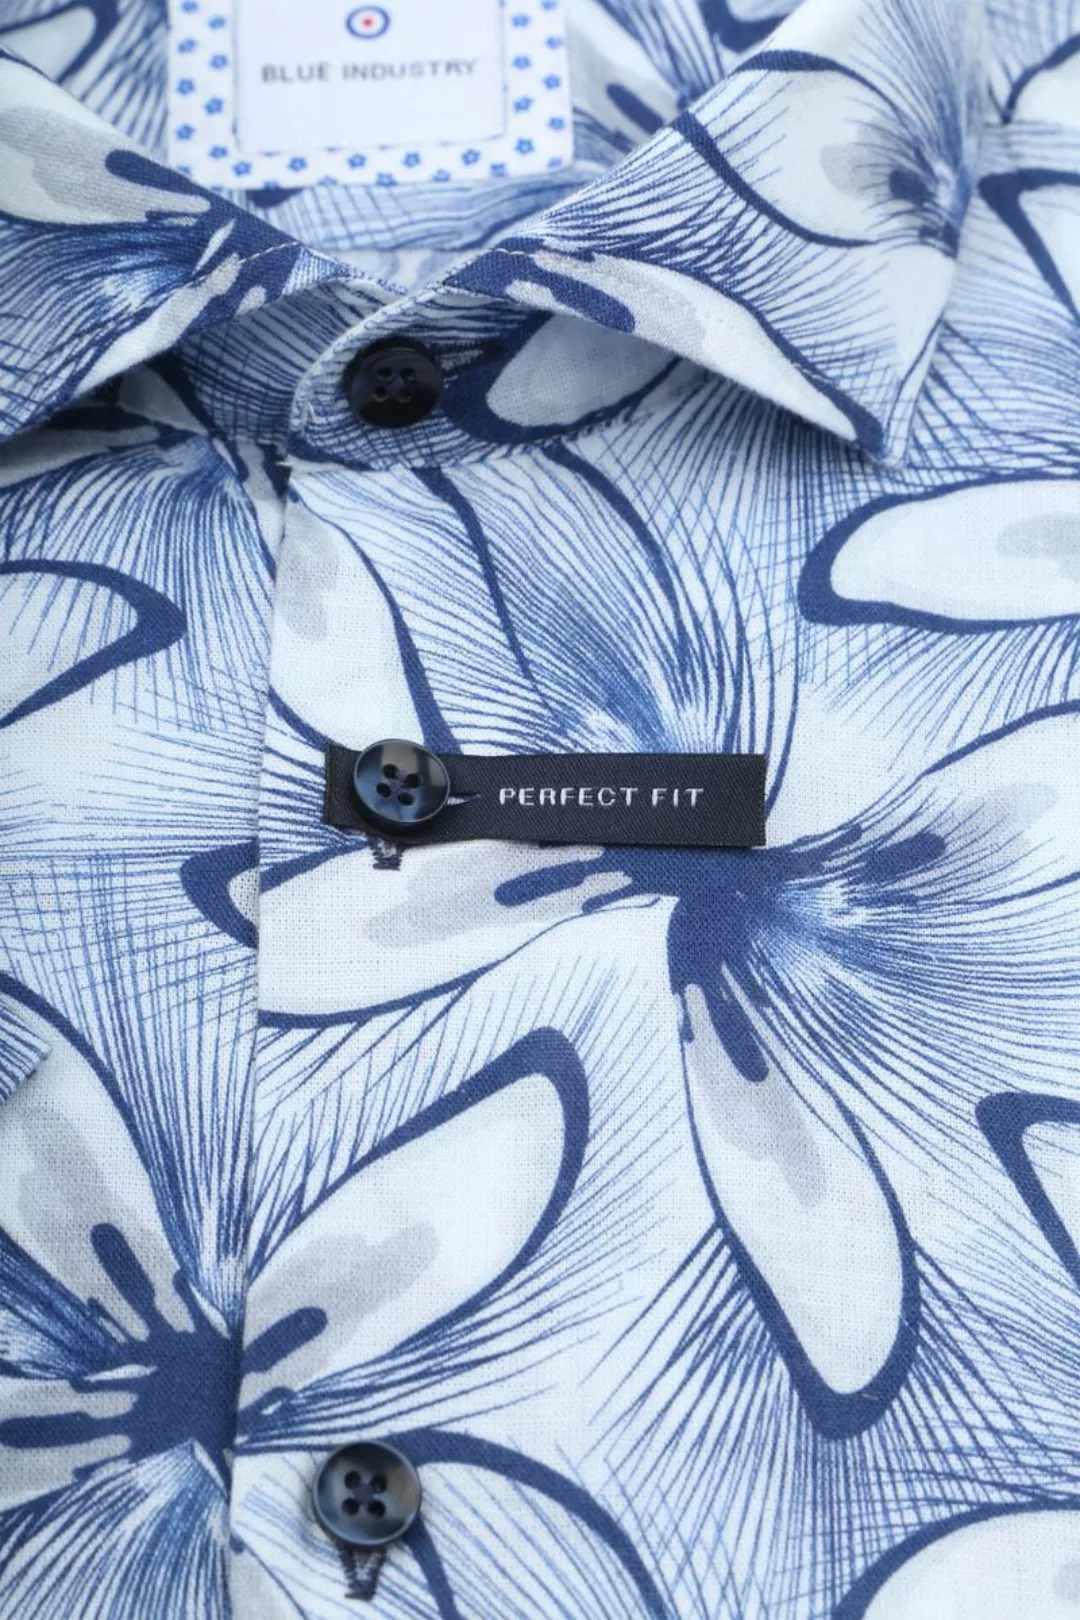 Blue Industry Short Sleeve Hemd Leinen Druck Blau - Größe 45 günstig online kaufen